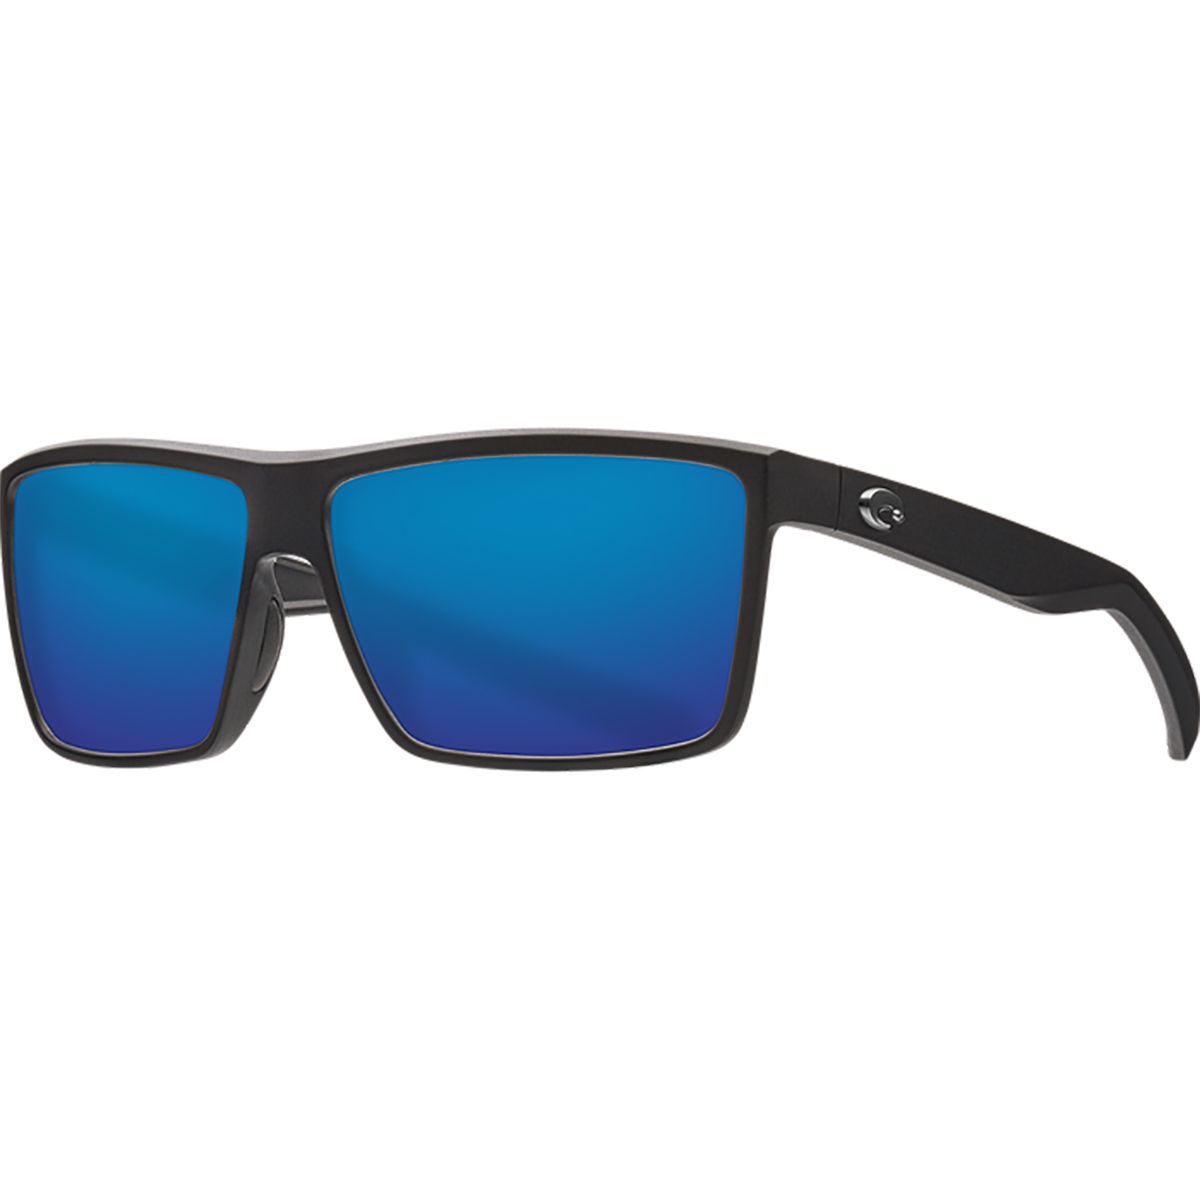 Costa Rinconcito 580G Polarized Sunglasses